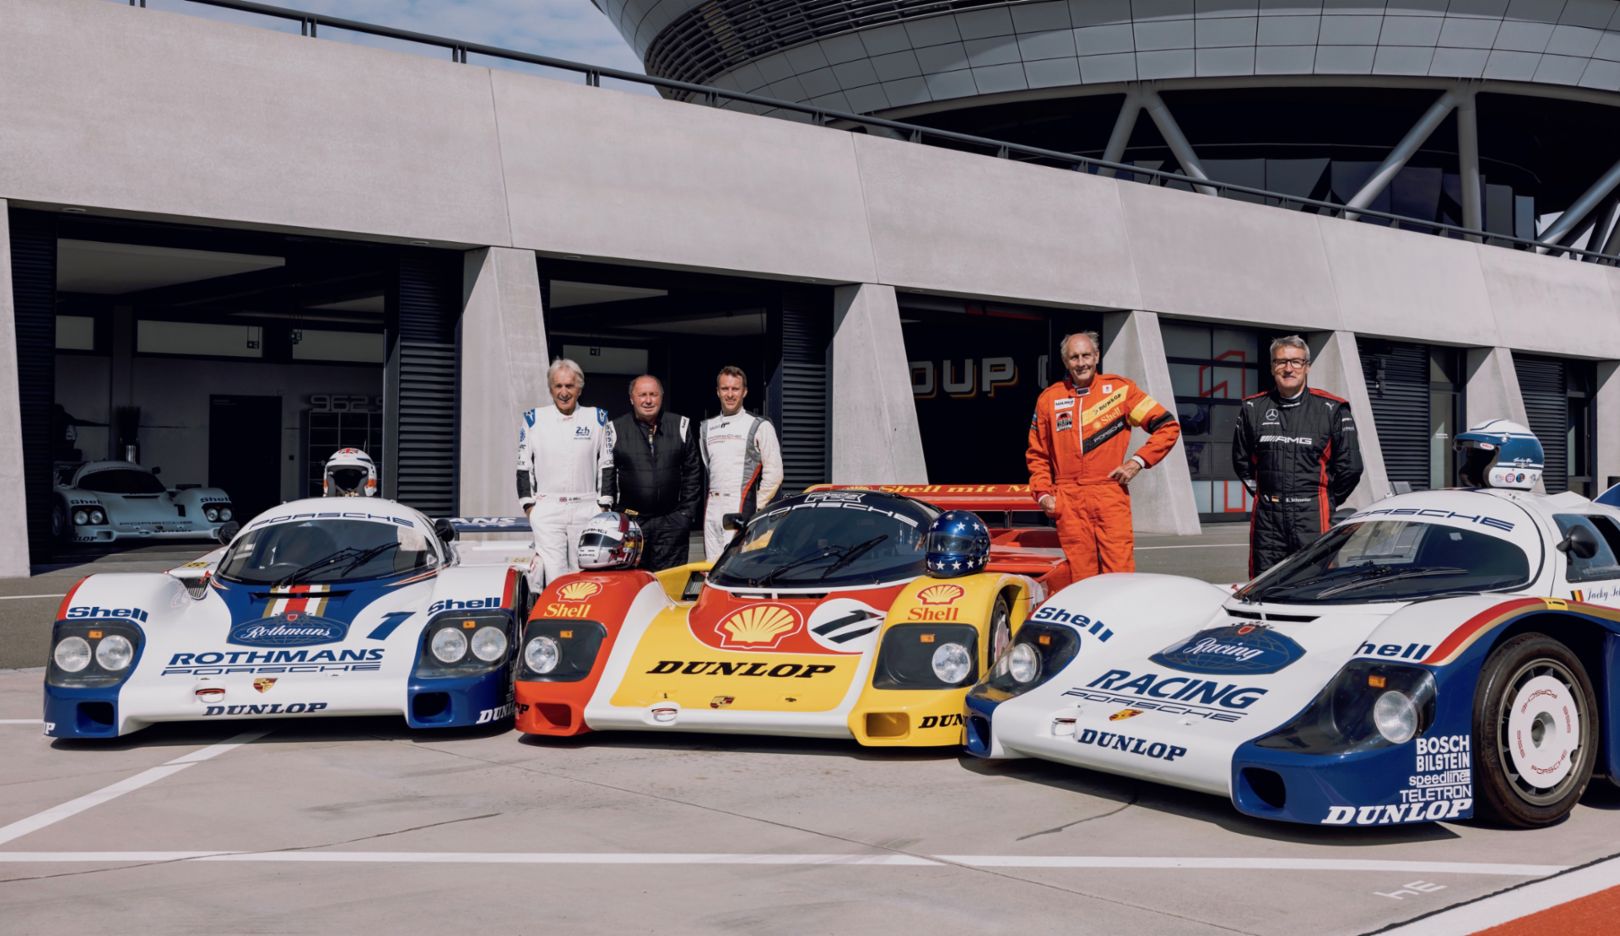 Group C racing drivers: Derek Bell, Jochen Mass, Timo Bernhard, Hans-Joachim Stuck, Bernd Schneider, l-r, 2022, Porsche AG